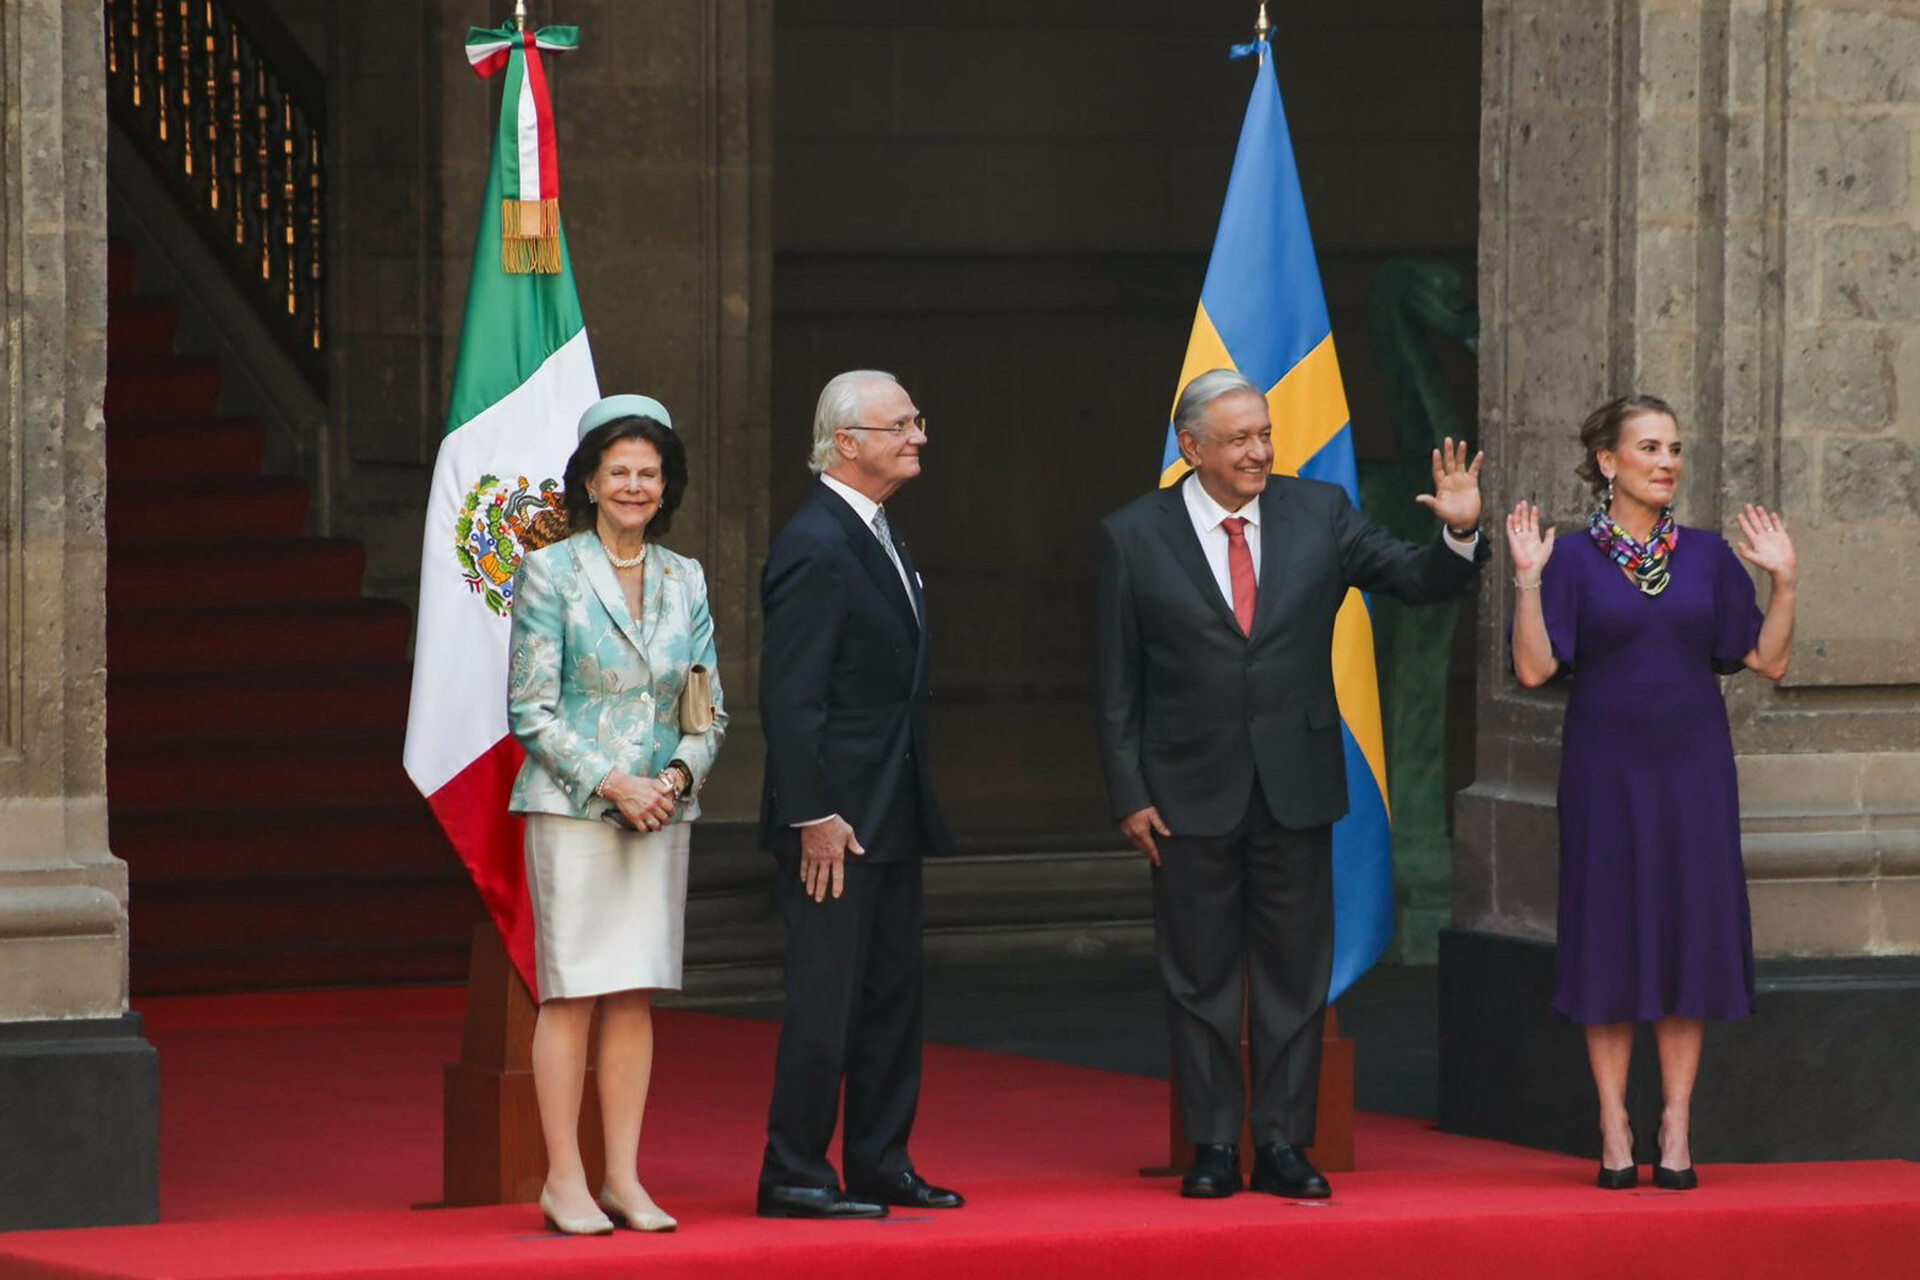  El presidente Andrés Manuel López Obrador y su esposa Beatriz Gutiérrez Müller reciben al rey Carlos XVI Gustavo y la reina Silvia, de Suecia. (EL UNIVERSAL)